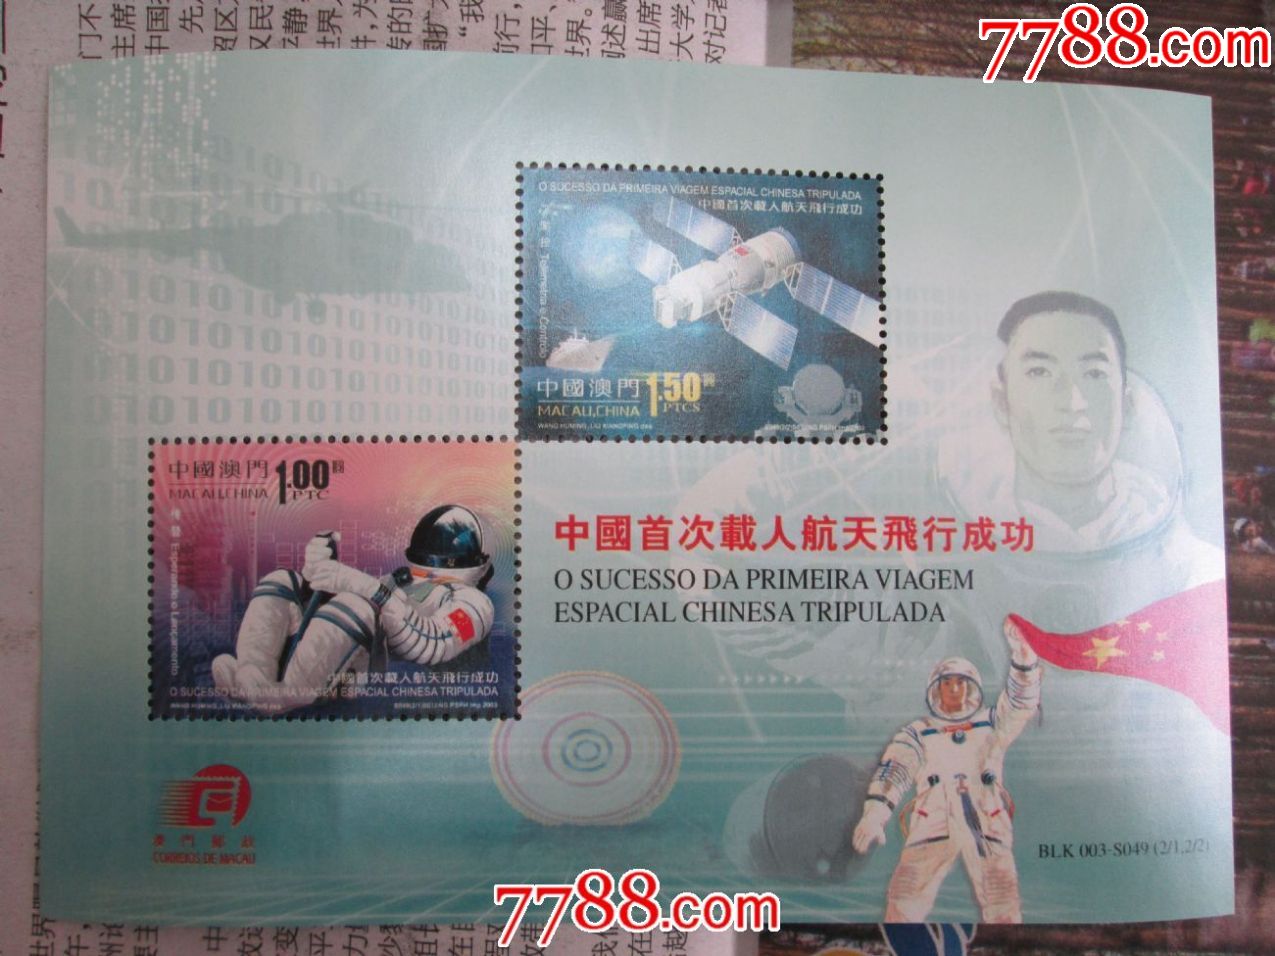 2003年特5航天载人小型张中国的4张 澳门的6张合计10张合拍